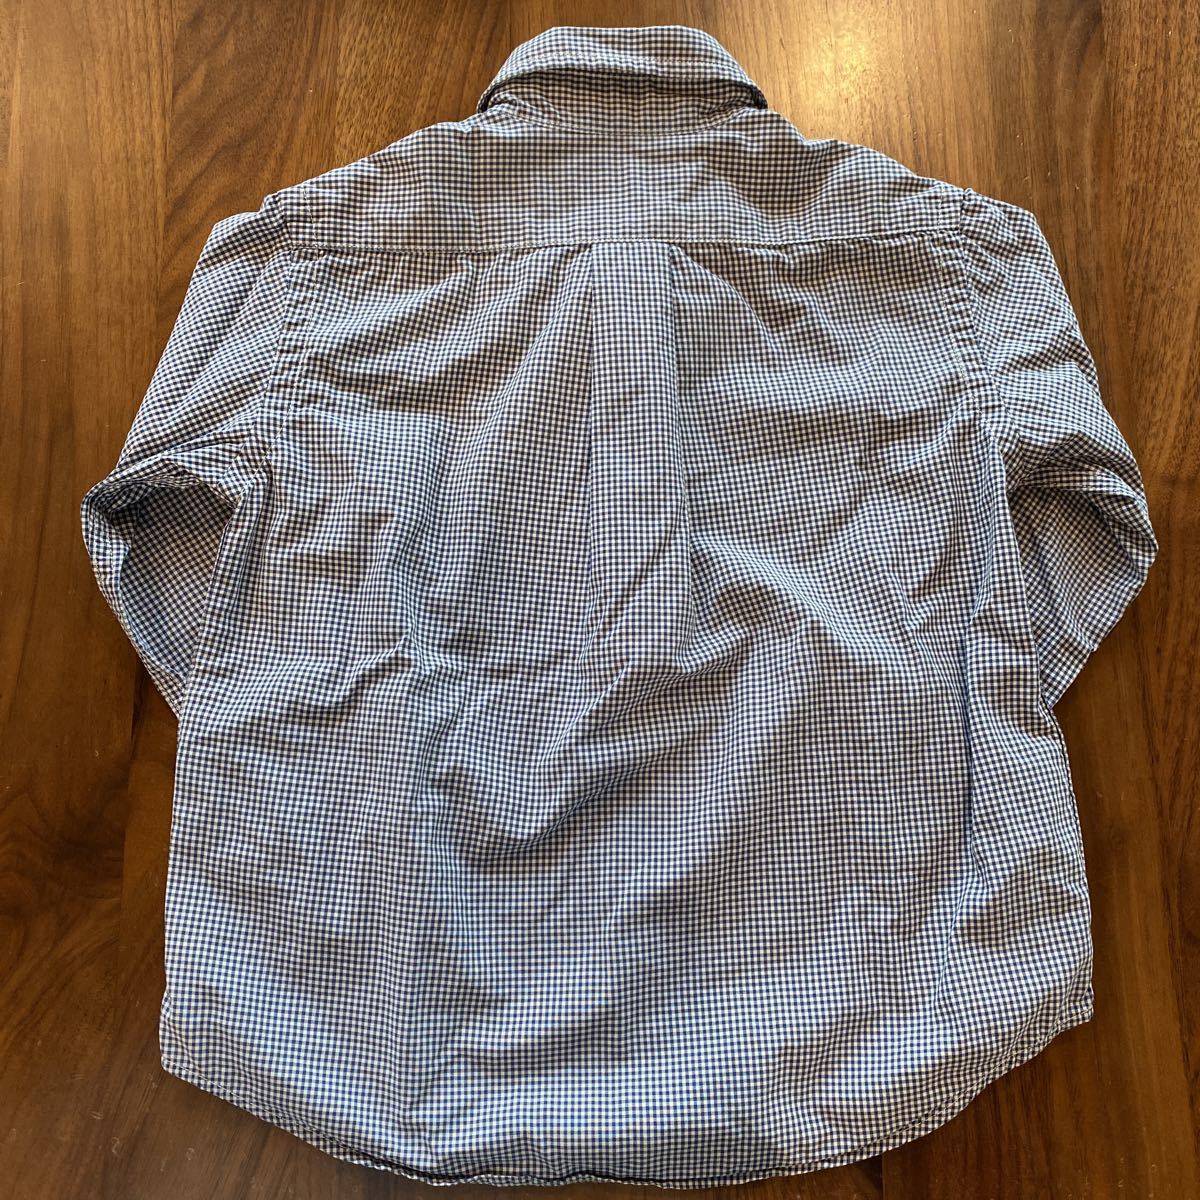  Ralph Lauren Kids long sleeve shirt button down shirt 90cm beautiful goods RALPH LAUREN check shirt 